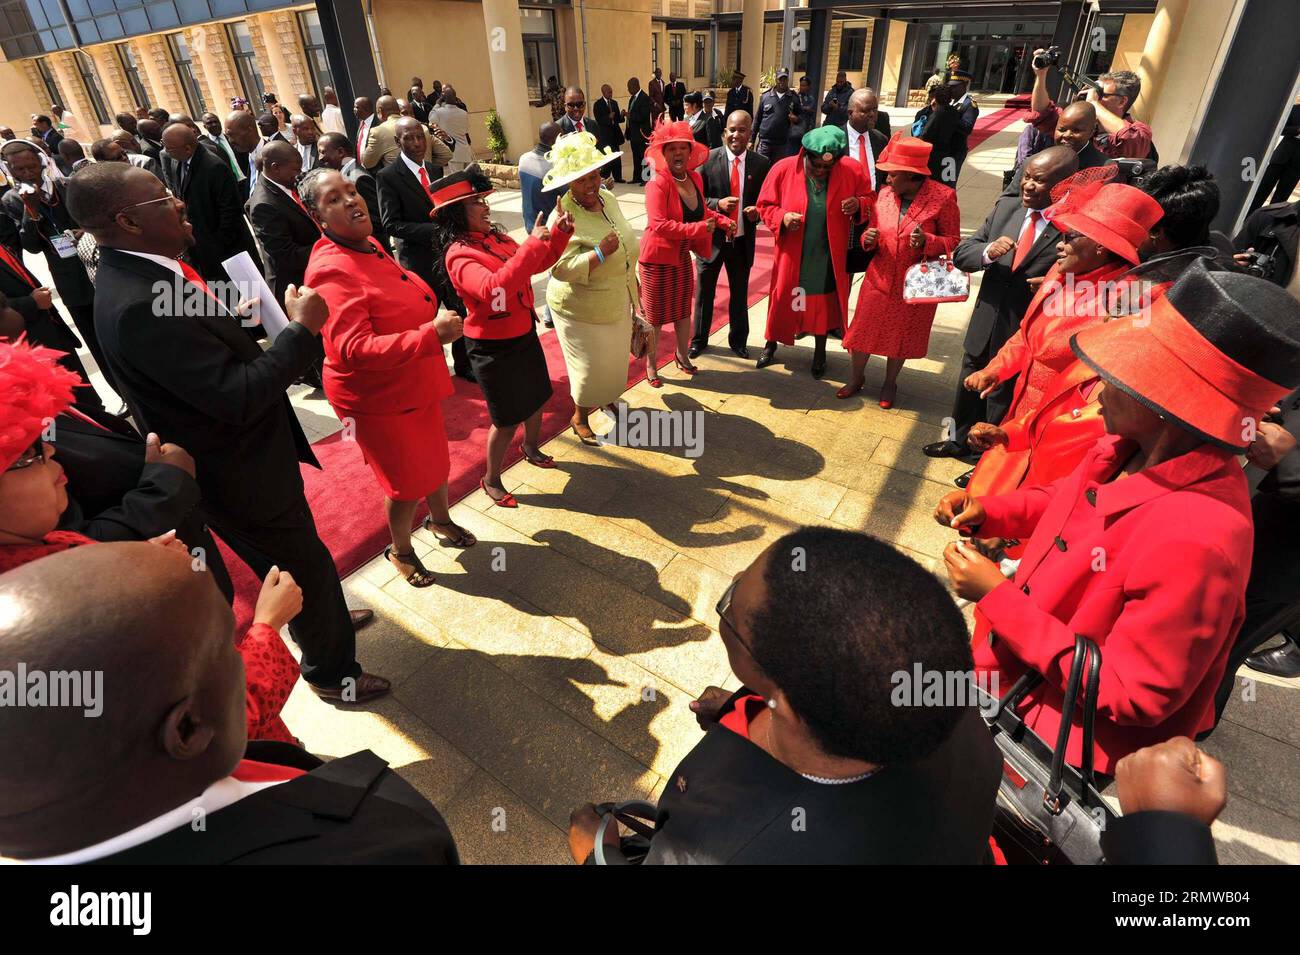 (141017) -- MASERU, 17 ottobre 2014 -- i deputati del Parlamento del Lesotho celebrano la riconferma del Parlamento a Maseru, Lesotho, il 17 ottobre 2014. Il Parlamento del Lesotho è stato riunito venerdì dopo una chiusura di quattro mesi, raggiungendo il primo passo di un accordo di pace volto a risolvere settimane di crisi politica scatenata da un tentativo di colpo di stato militare nel Regno dell'Africa meridionale alla fine di agosto. CGIS/) LESOTHO-MASERU-PARLIAMENT-RIAPERTURA ElmondxJiyane PUBLICATIONxNOTxINxCHN Maseru Ott 17 2014 deputati del Parlamento del Lesotho il Parlamento a Maseru Lesotho IL 17 ottobre 2014 Lesotho S Parl Foto Stock